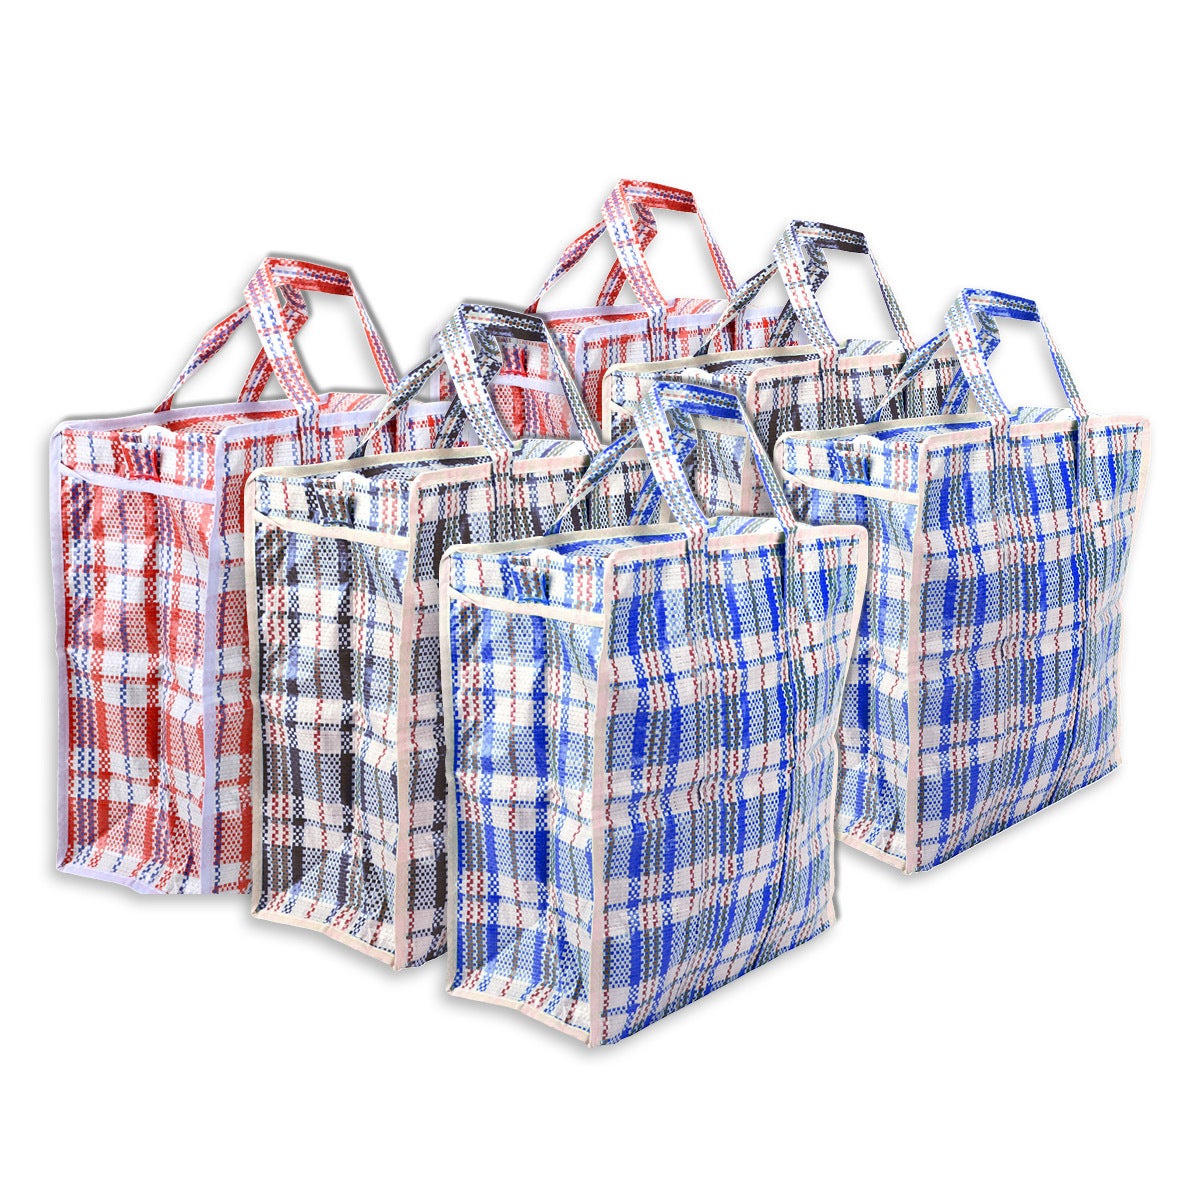 Home Master 6PK Shopping Bags Zip Top Strong Durable Tartan Design 65 x 58cm